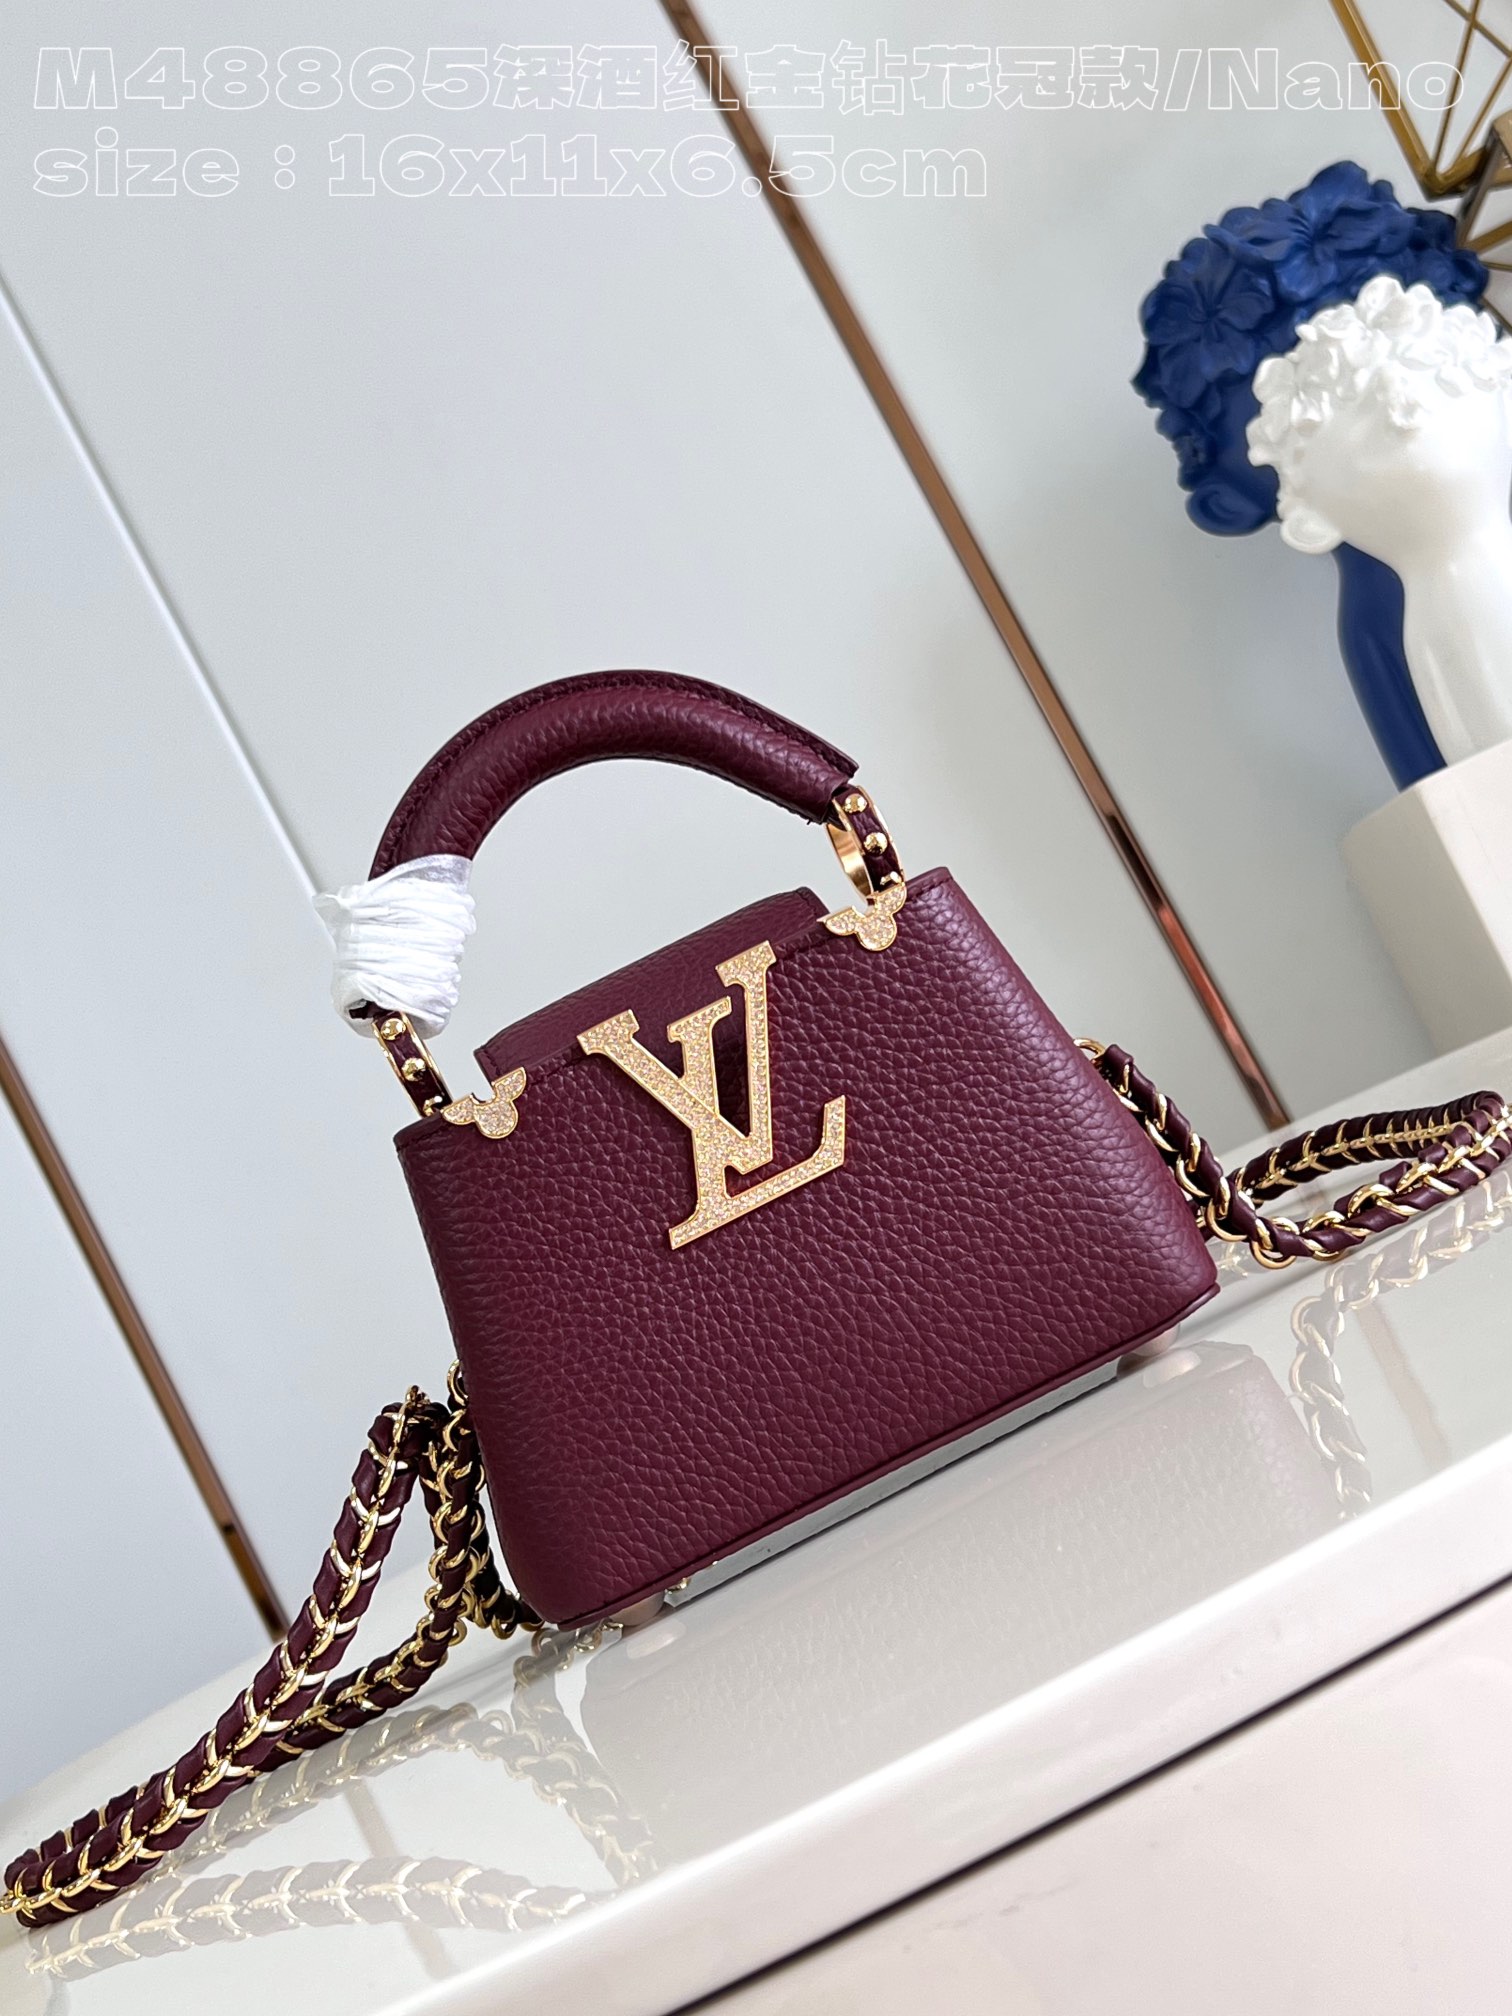 Louis Vuitton LV Capucines Taschen Handtaschen Beste Replikum neuer Stil
 Burgund Rot Kalbsleder Rindsleder Mini M48865